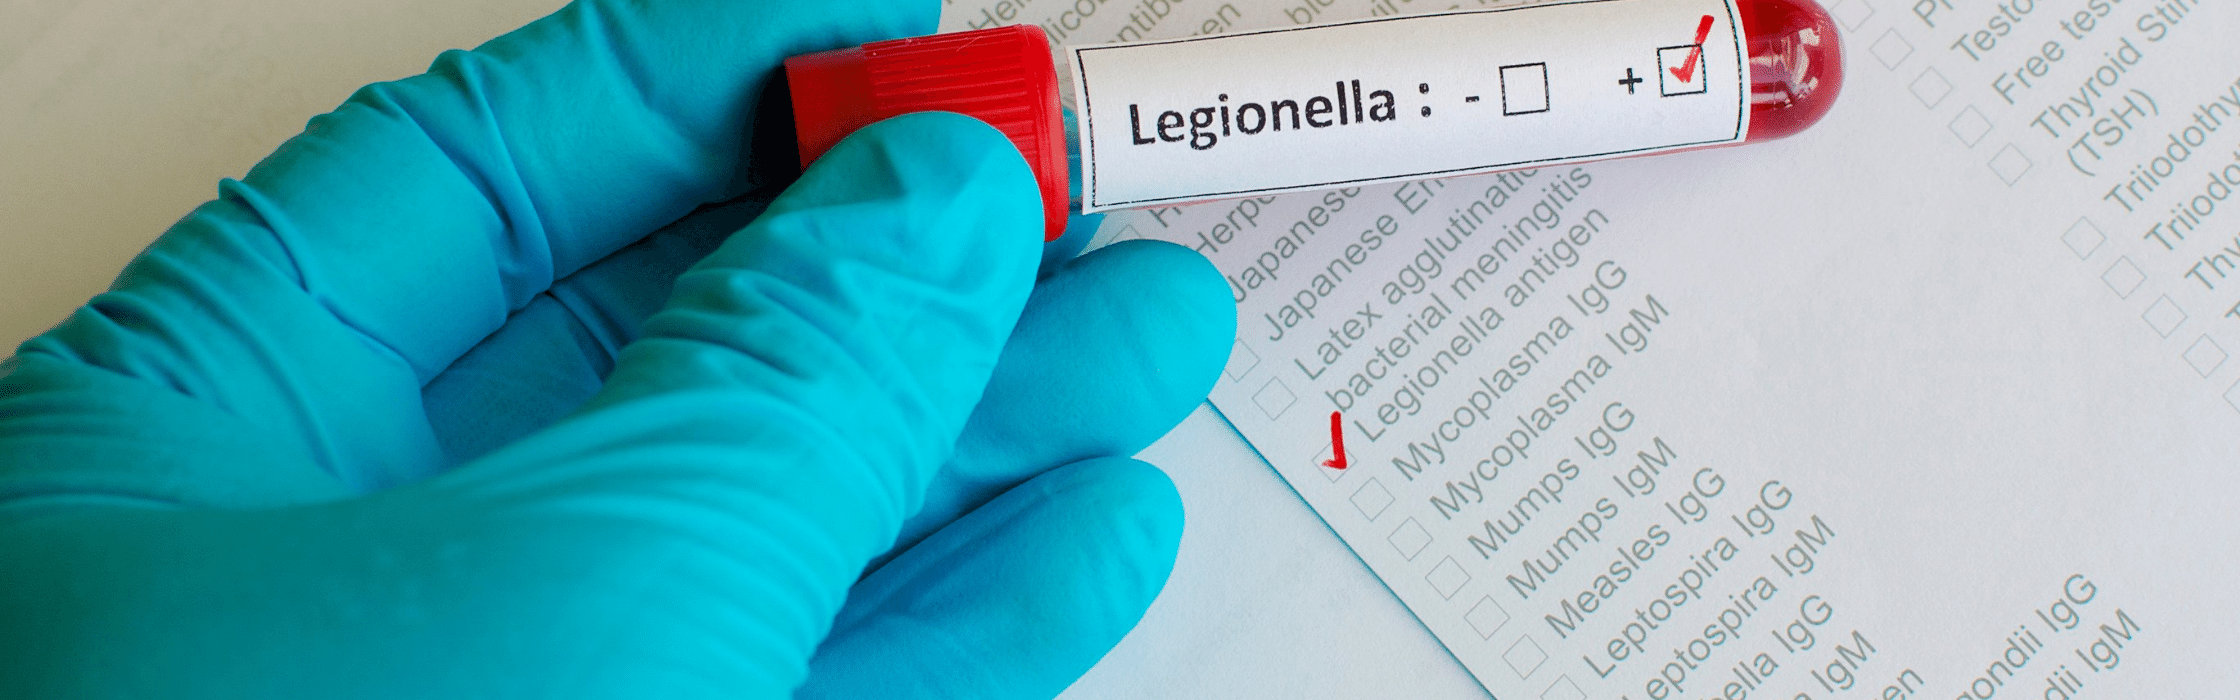 legionella test